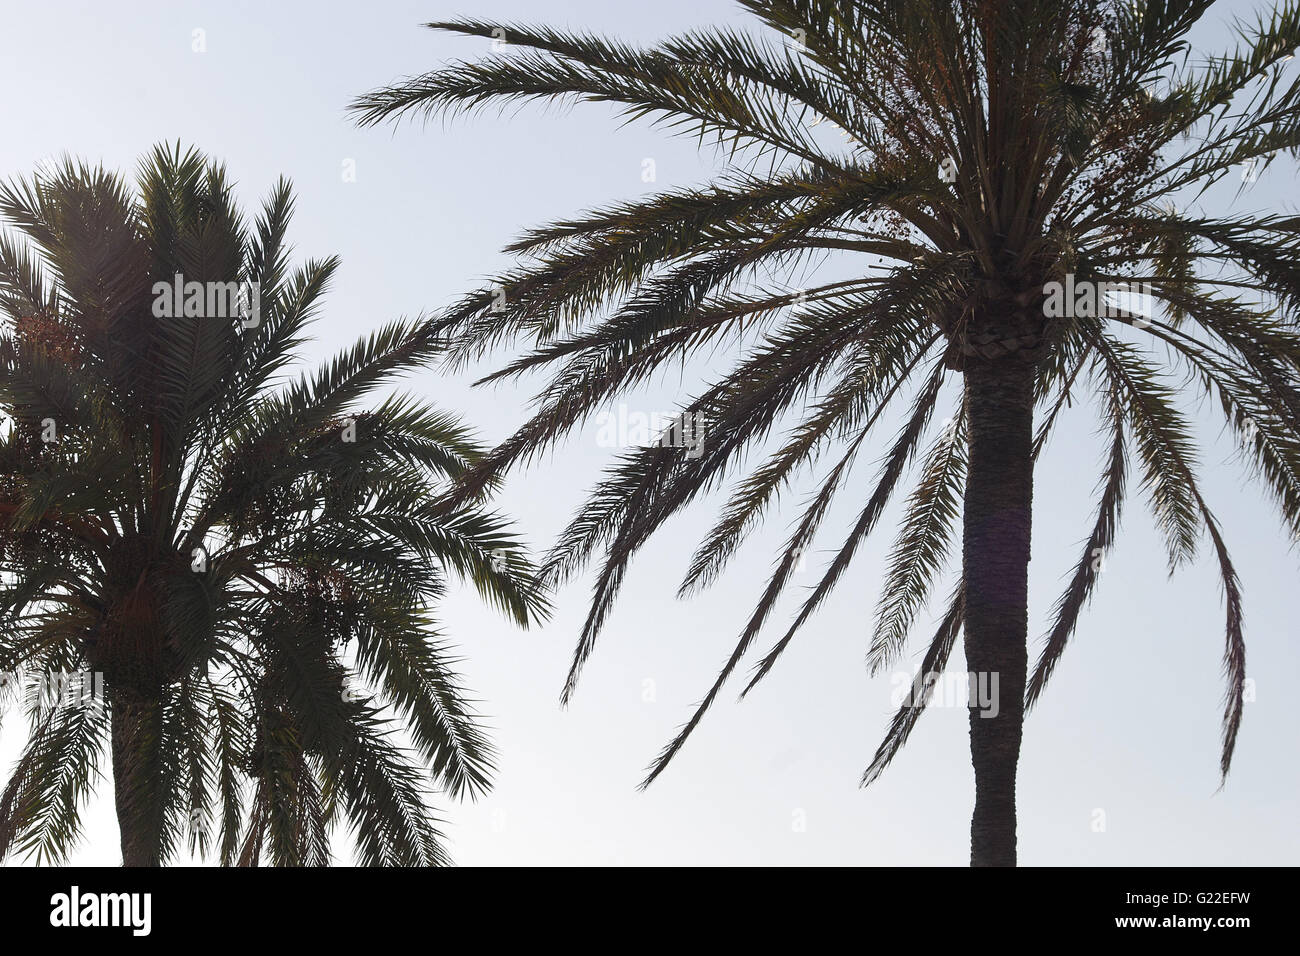 Un bel dettaglio poetica immagine di due palme sul viale di Palma il colpo da sotto contro un cielo blu chiaro, Palma Foto Stock